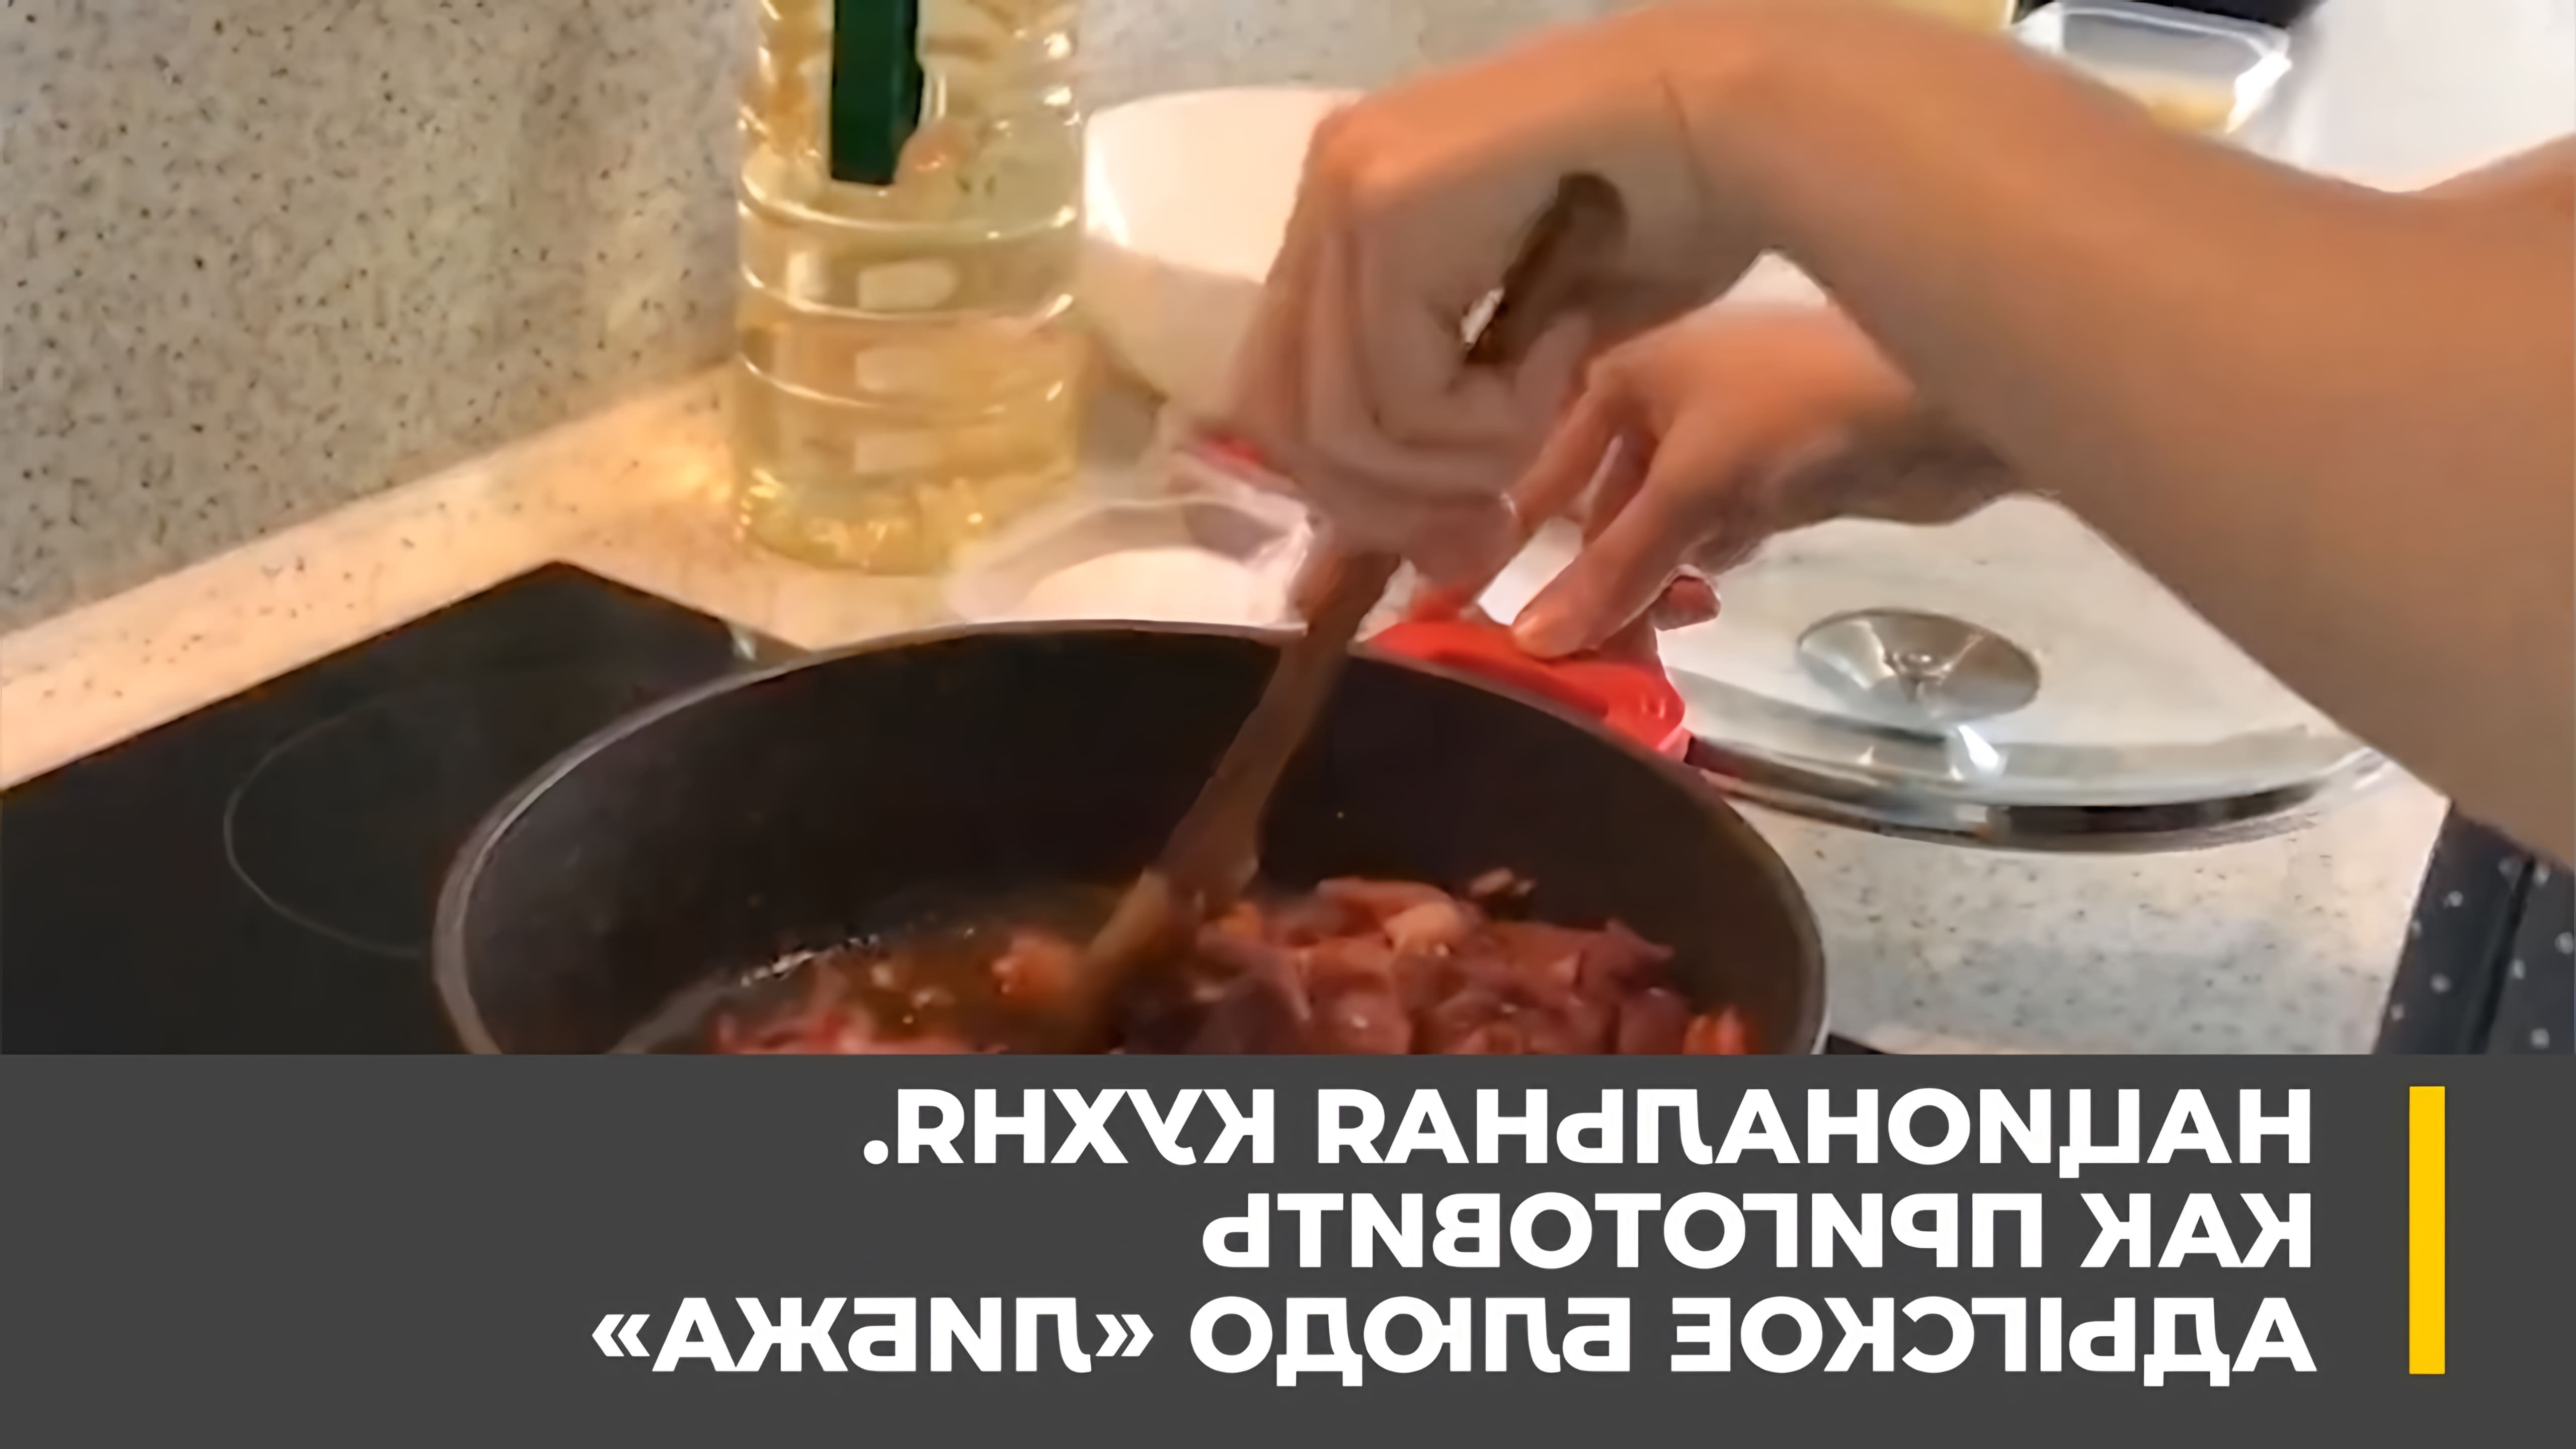 В этом видео рассказывается о национальной кухне и показан рецепт приготовления адыгского блюда "Либжа"